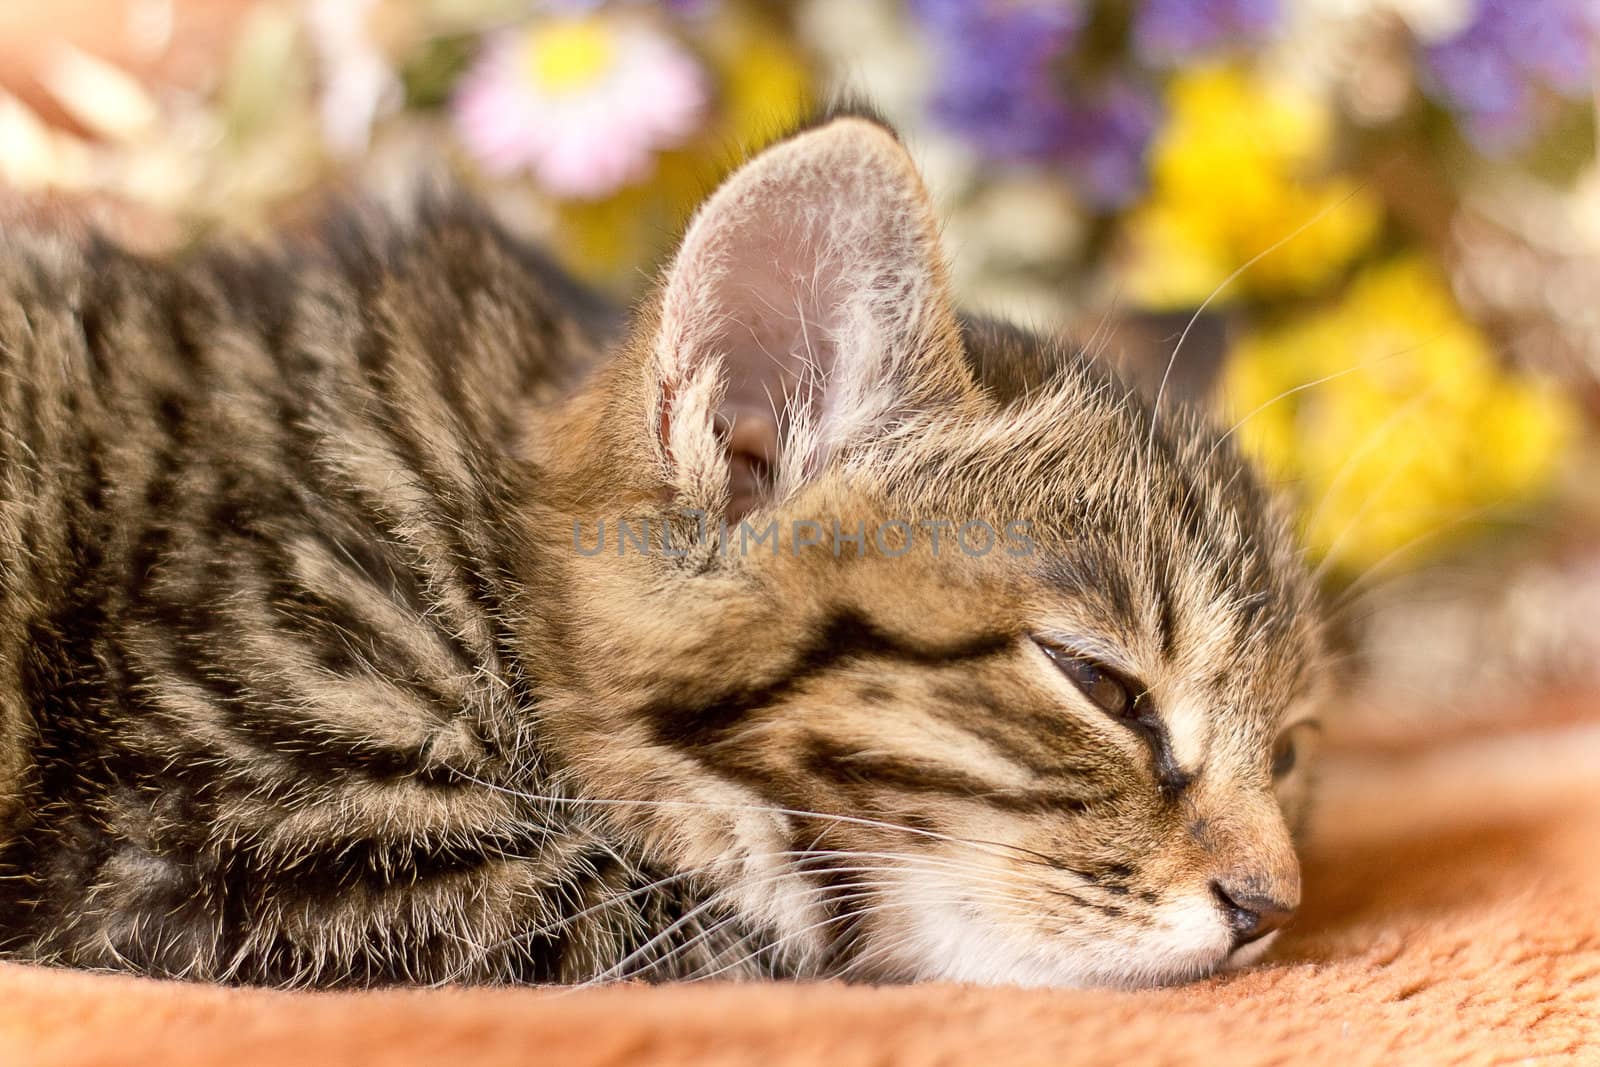 Little sleeping cat by Nika__